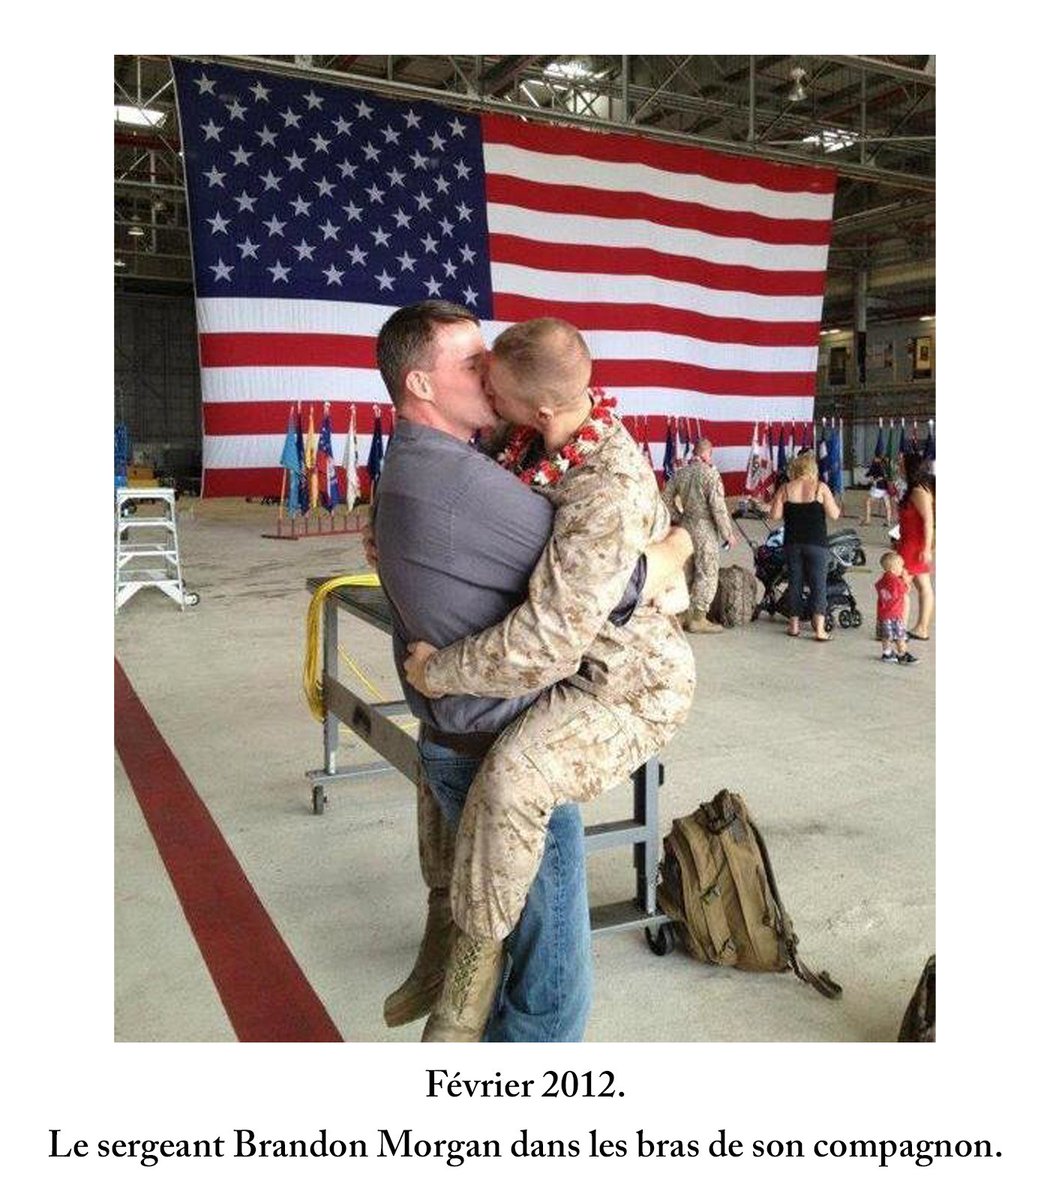 2011 marque aussi la fin de la politique du « don’t ask don’t tell ».L’étau se desserre: les photos de baisers de soldats gays deviennent virales et sont célébrées sur Facebook.15 ans plus tôt, une telle couverture du New Yorker faisait scandale.